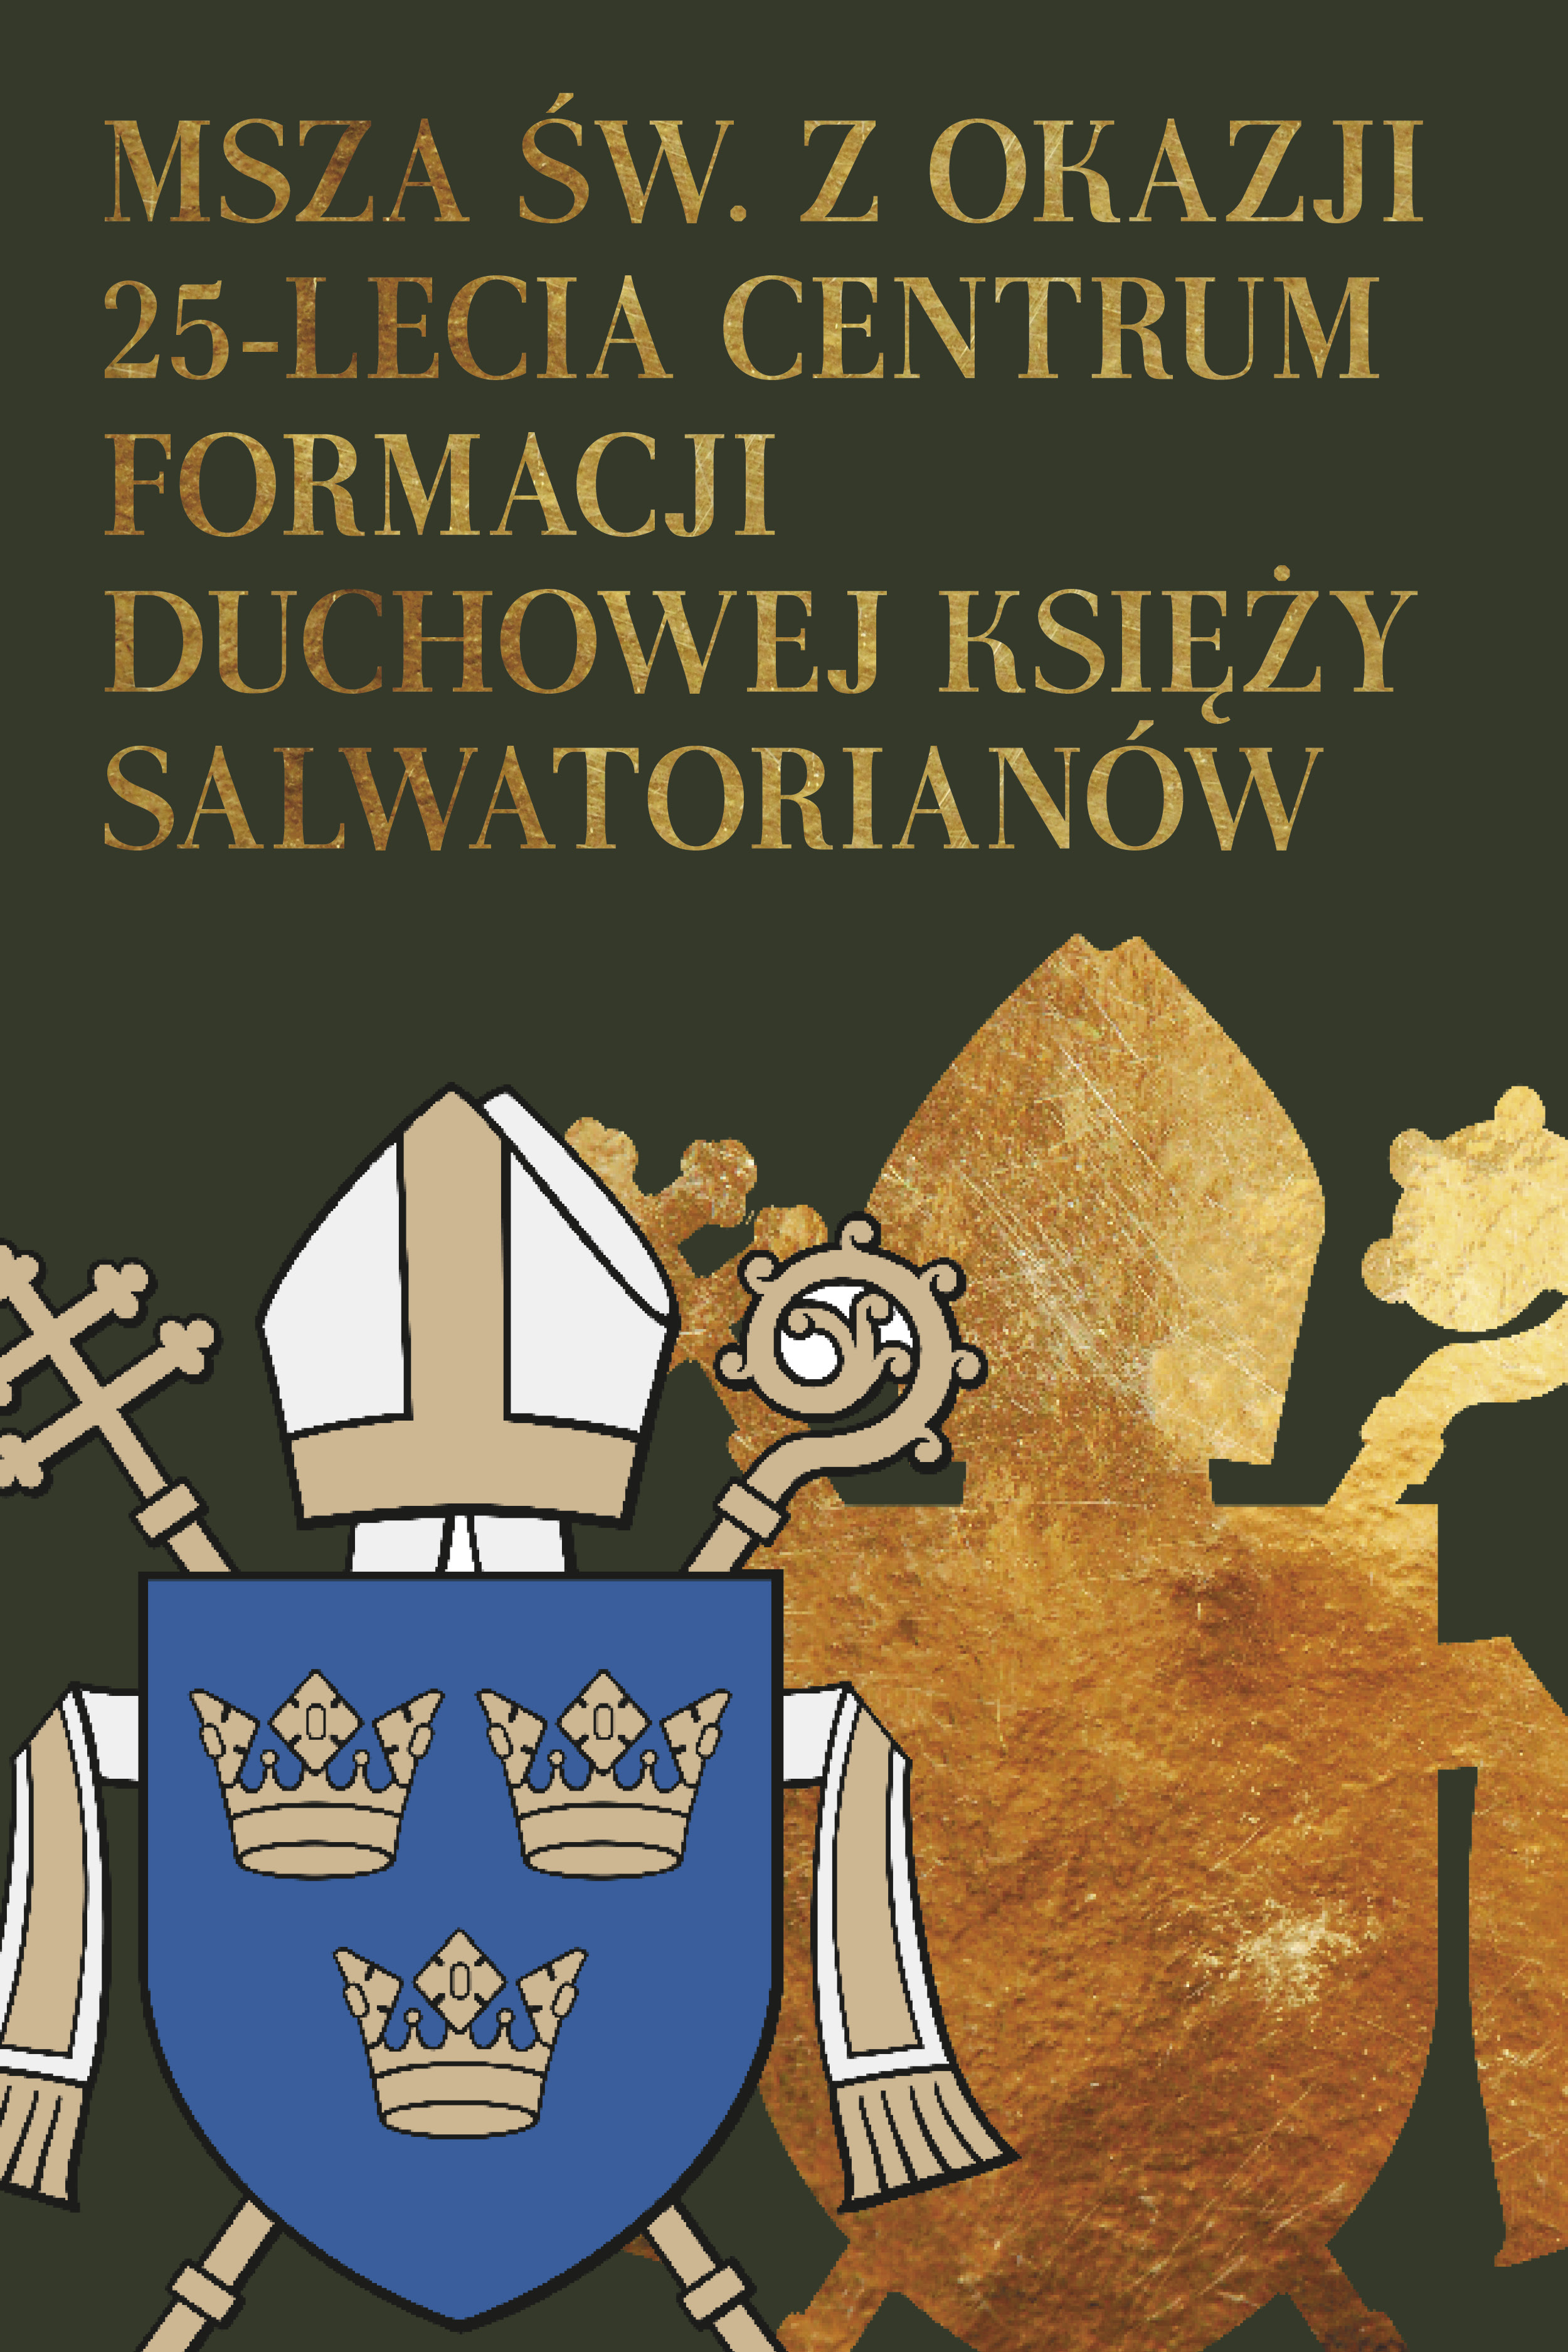 Msza św. z okazji 25-lecia Centrum Formacji Duchowej księży salwatorianów